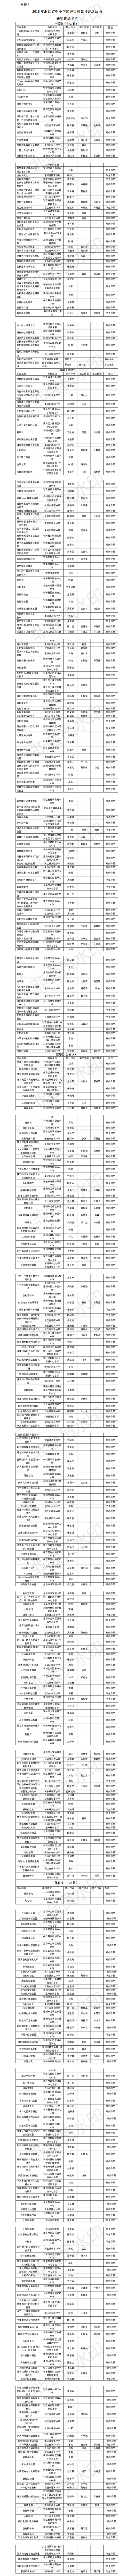 2018年浙江省中小学优秀自制教具评选活动获奖作品名单.png